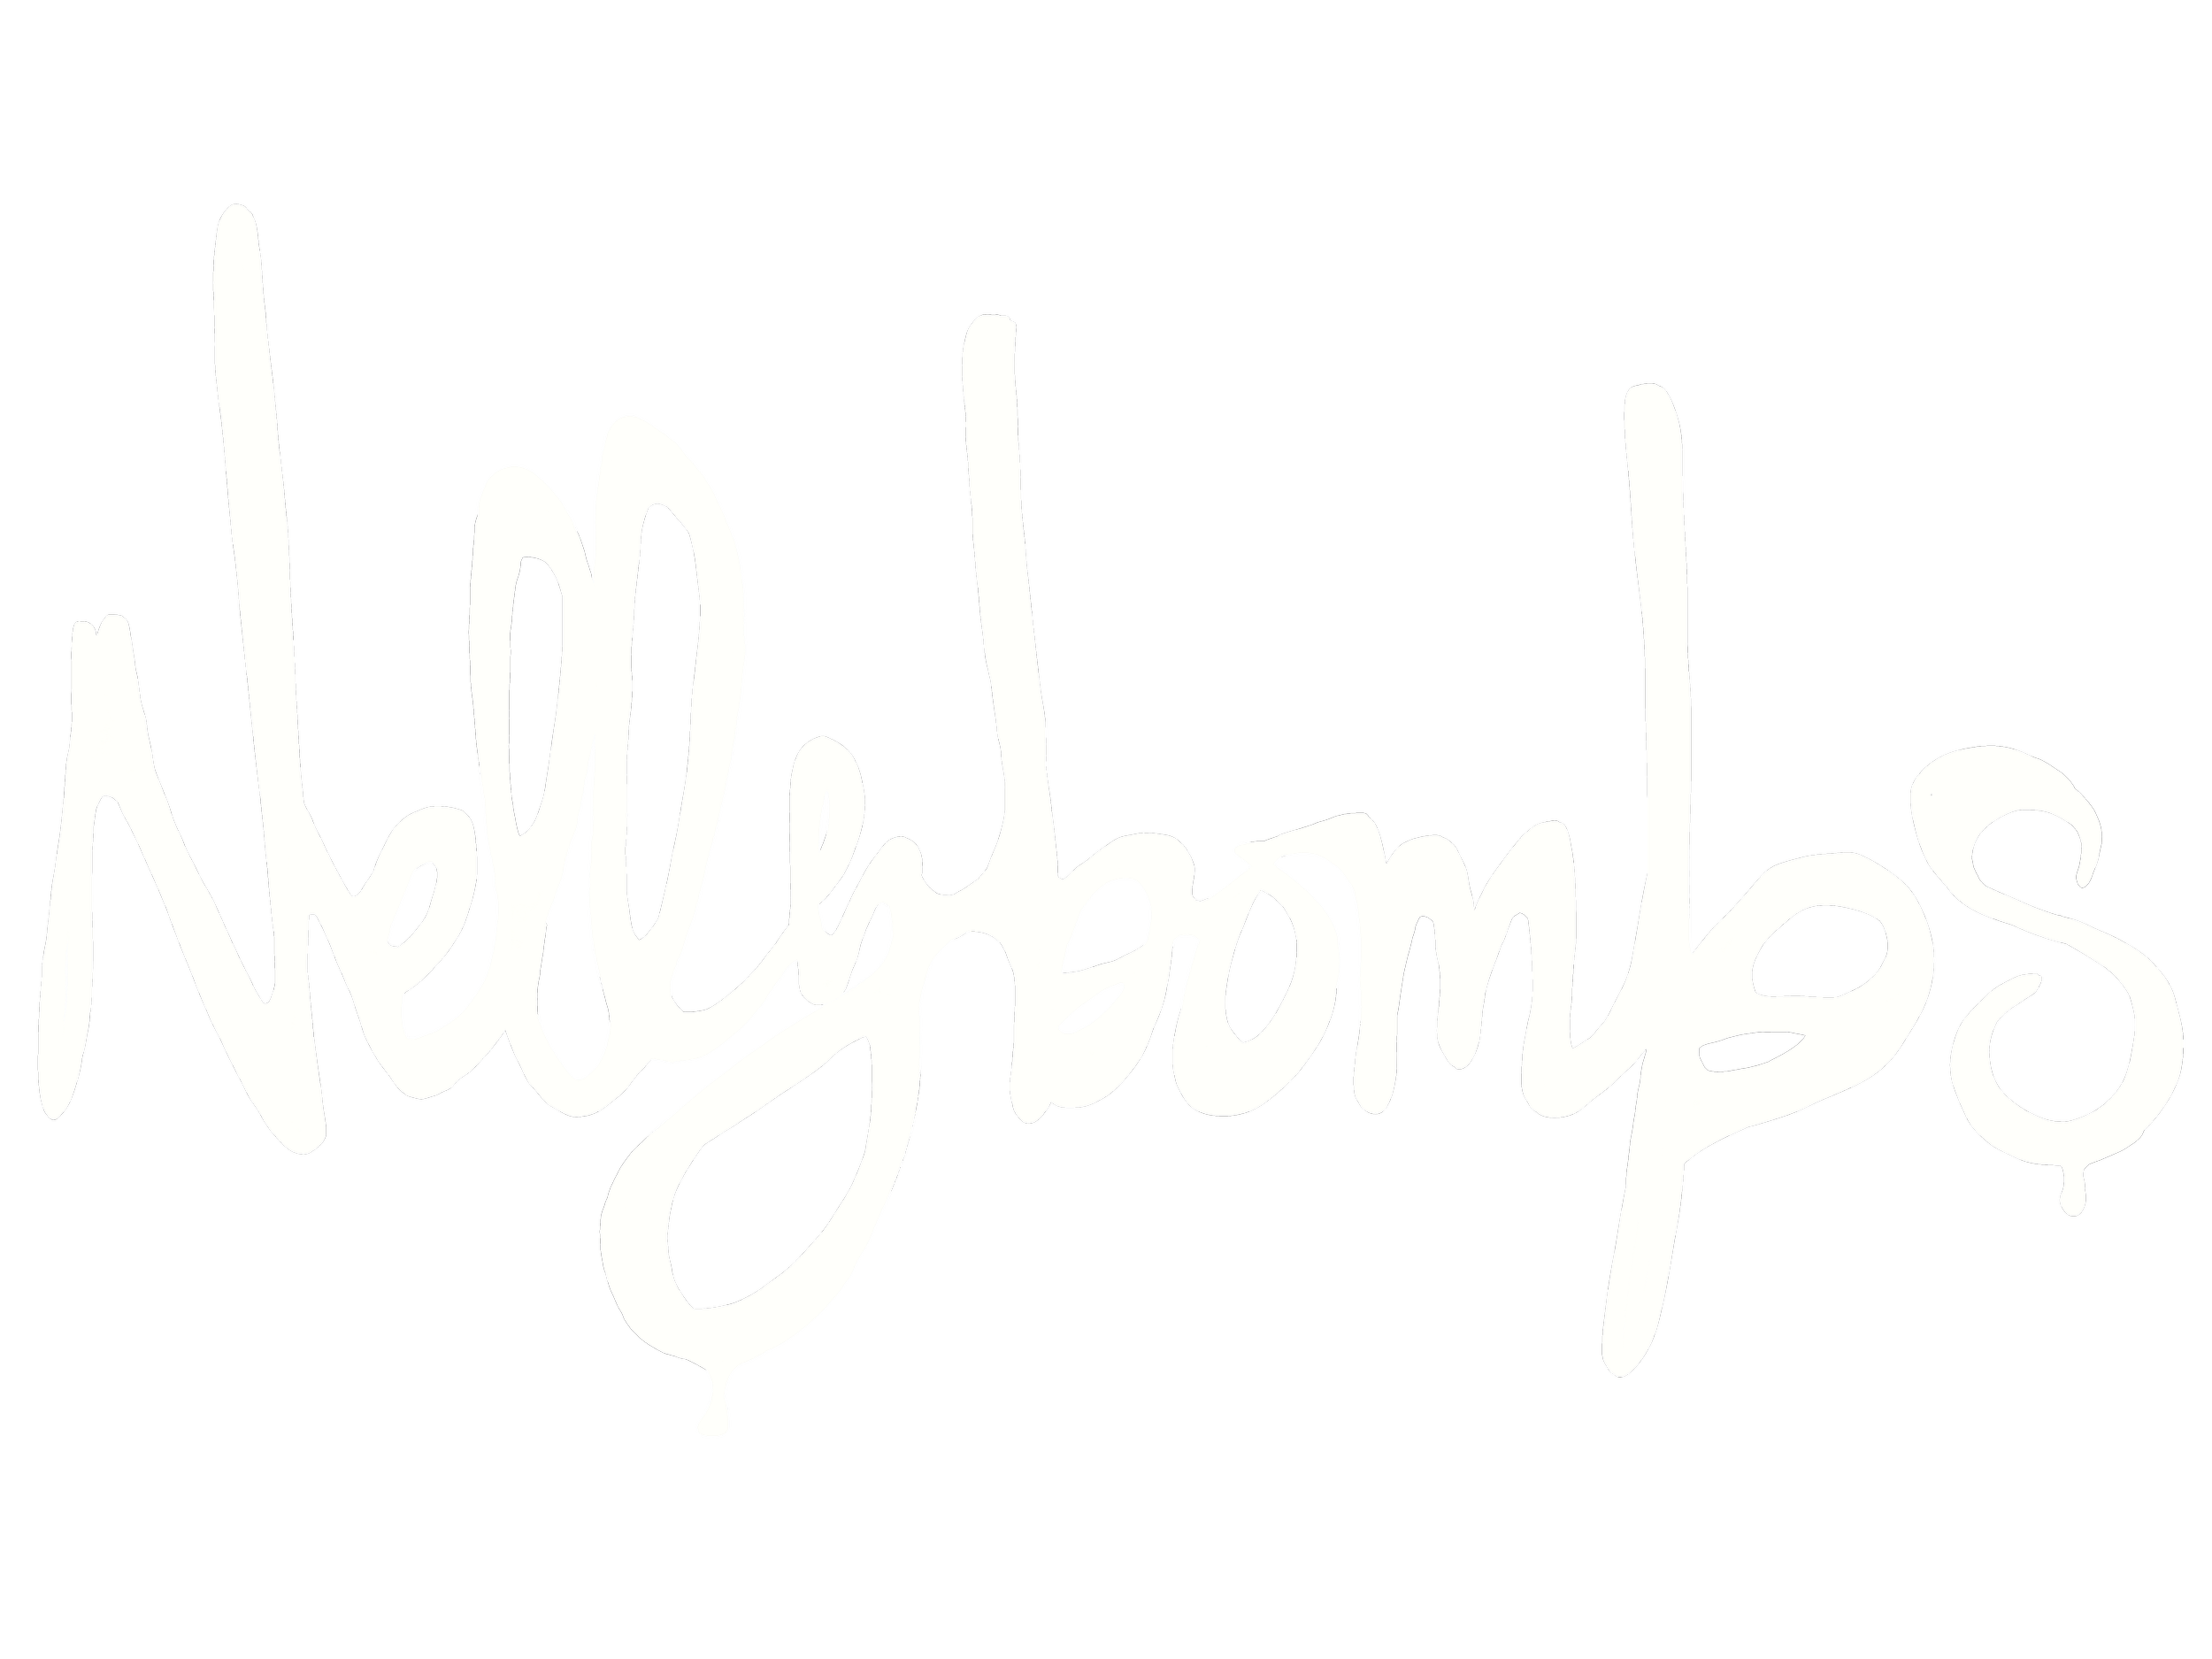 Nellybombs